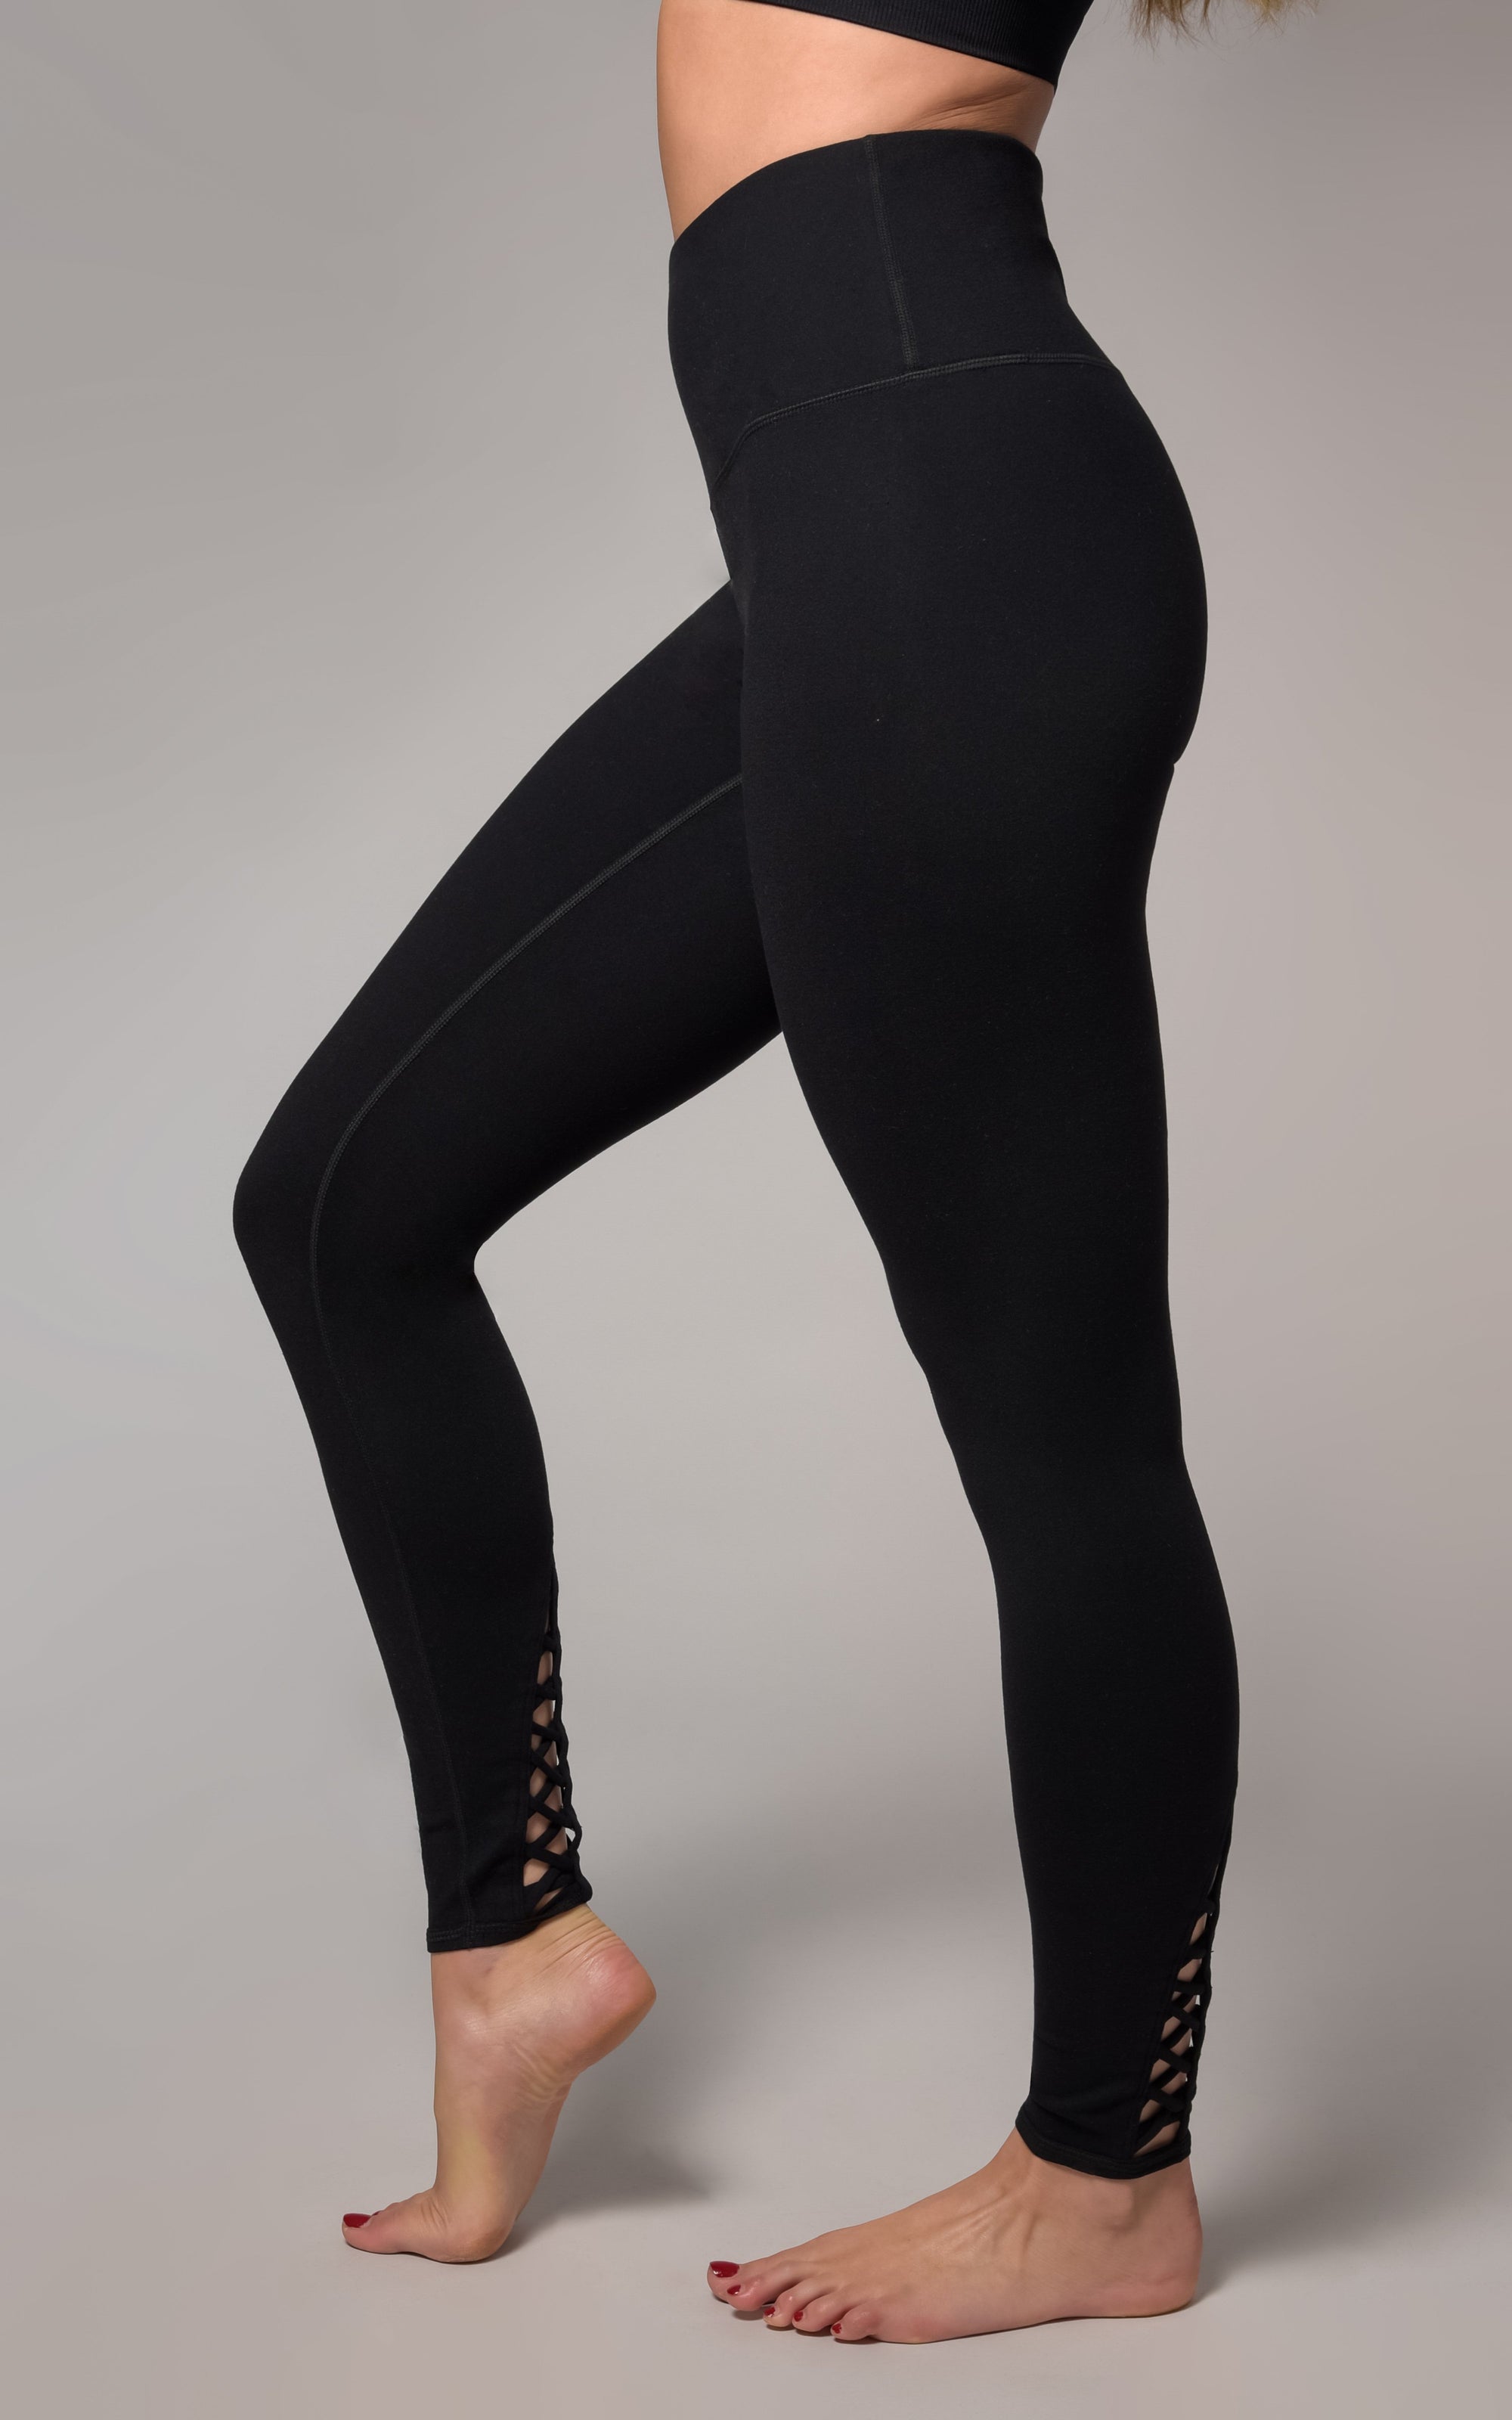 Buy Kica Second Skn Criss Cross Waistband Leggings For Yoga Grey